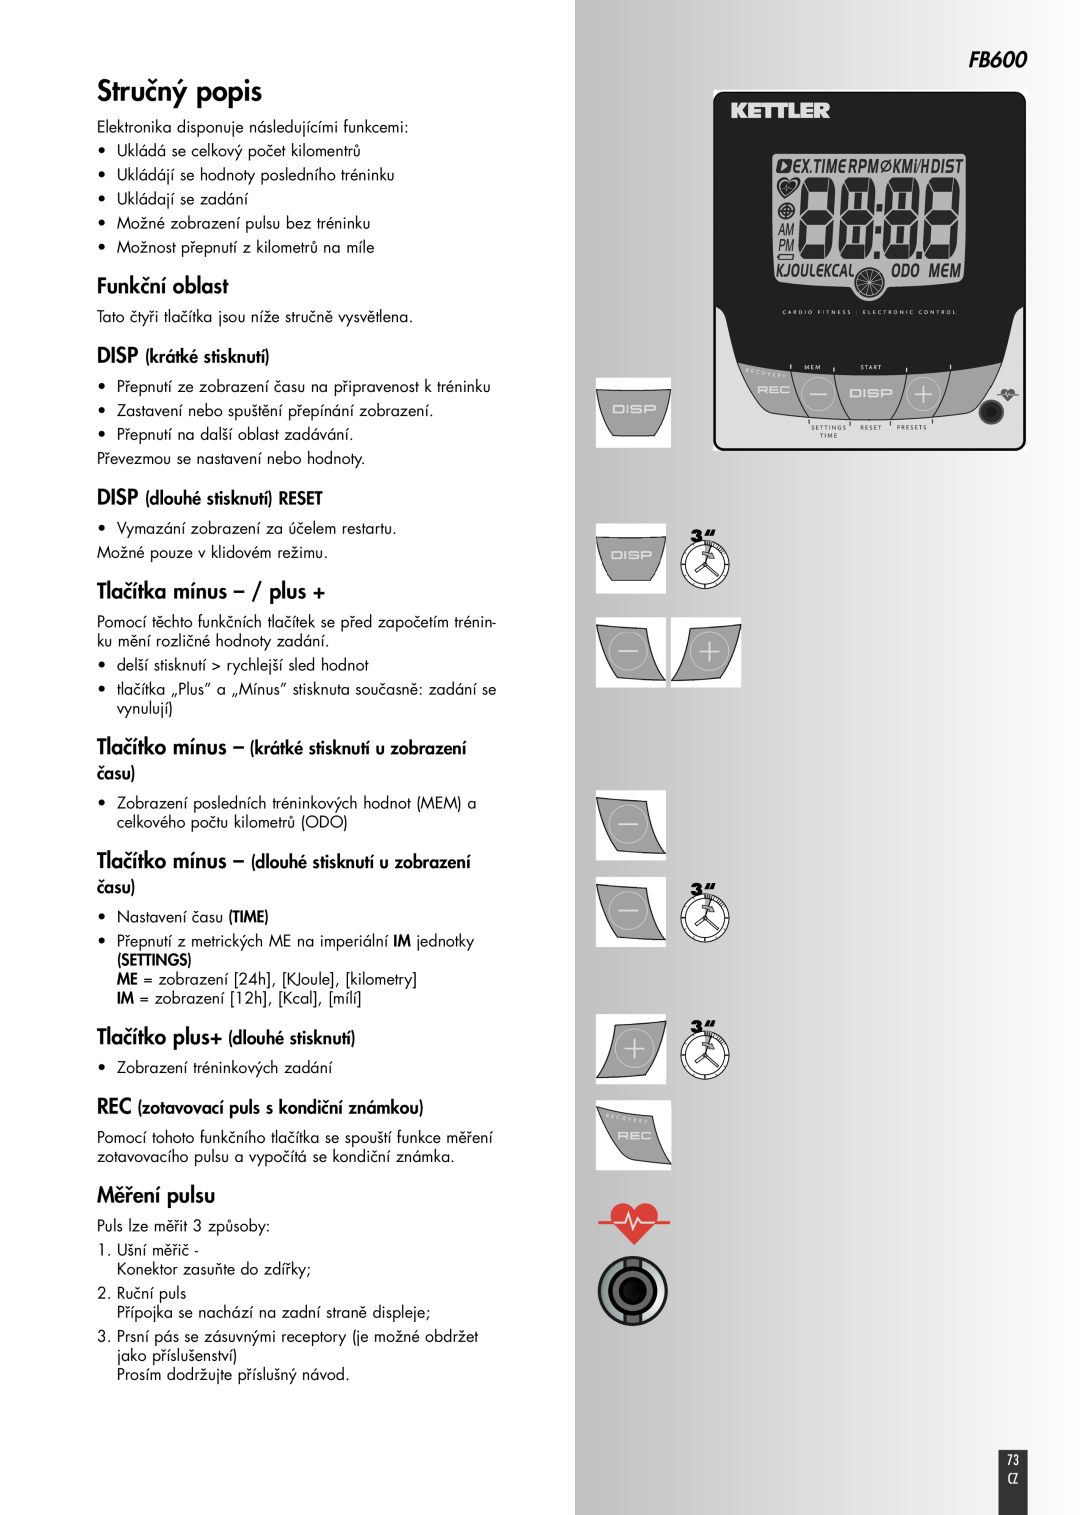 Kettler FB600 manual Stručný popis, Funkční oblast, Tlačítka mínus - / plus +, Měření pulsu, DISP krátké stisknutí 